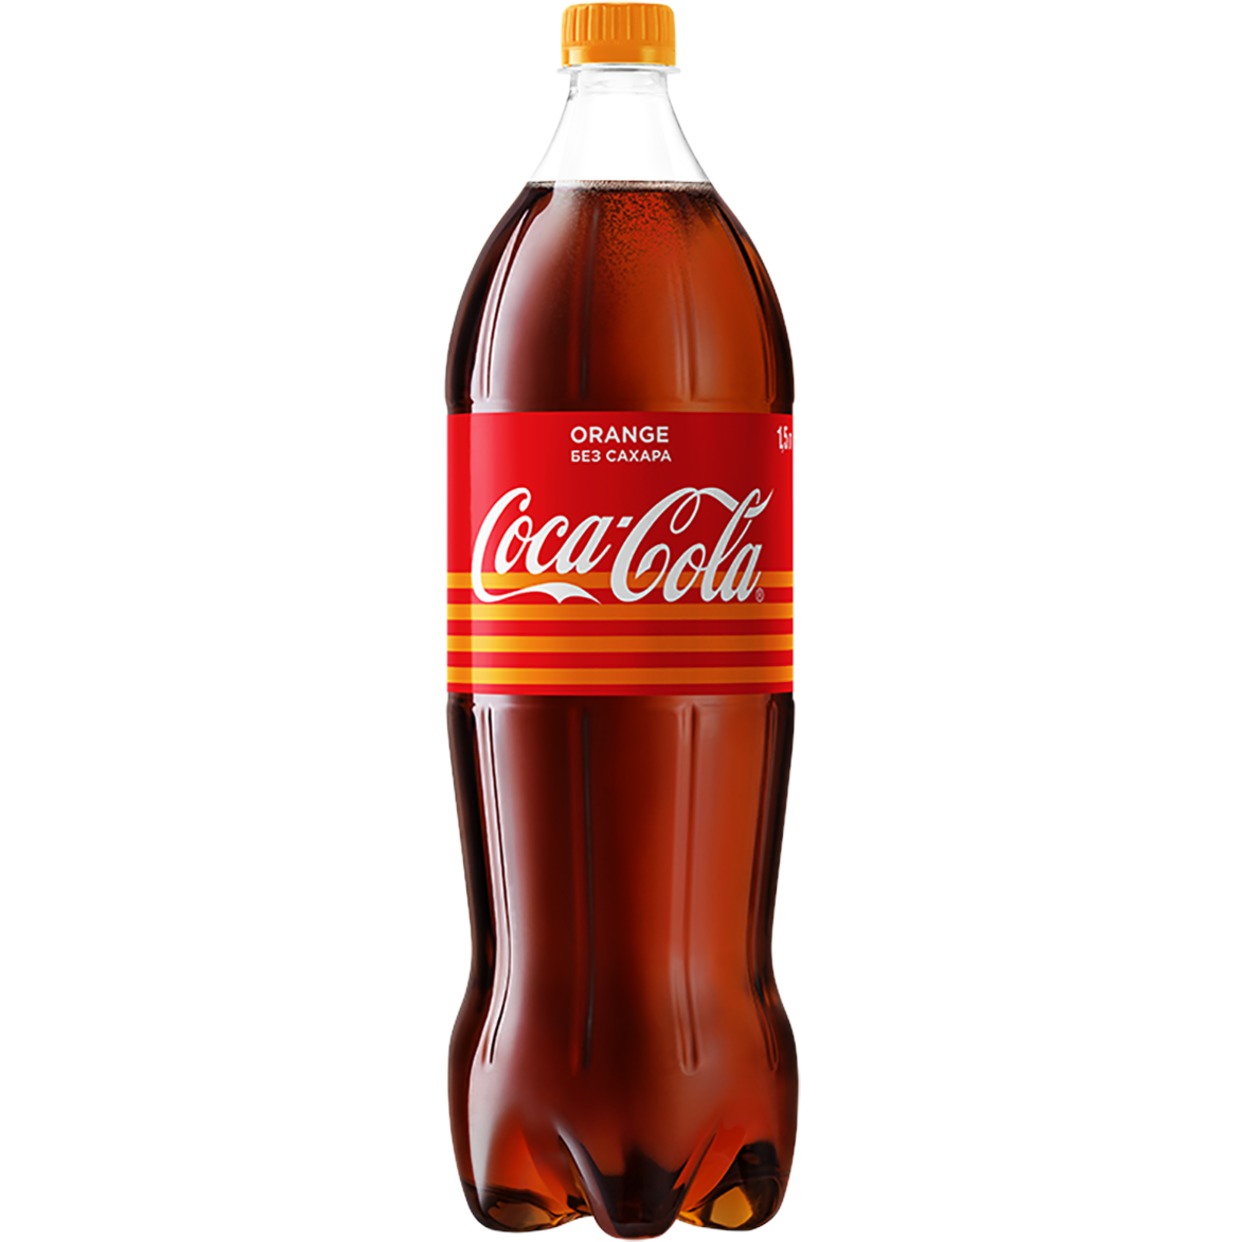 Напиток "Кока-Кола со вкусом апельсина" (Coca-Cola Orange) б/алк.сил.газ.1,5л по акции в Пятерочке